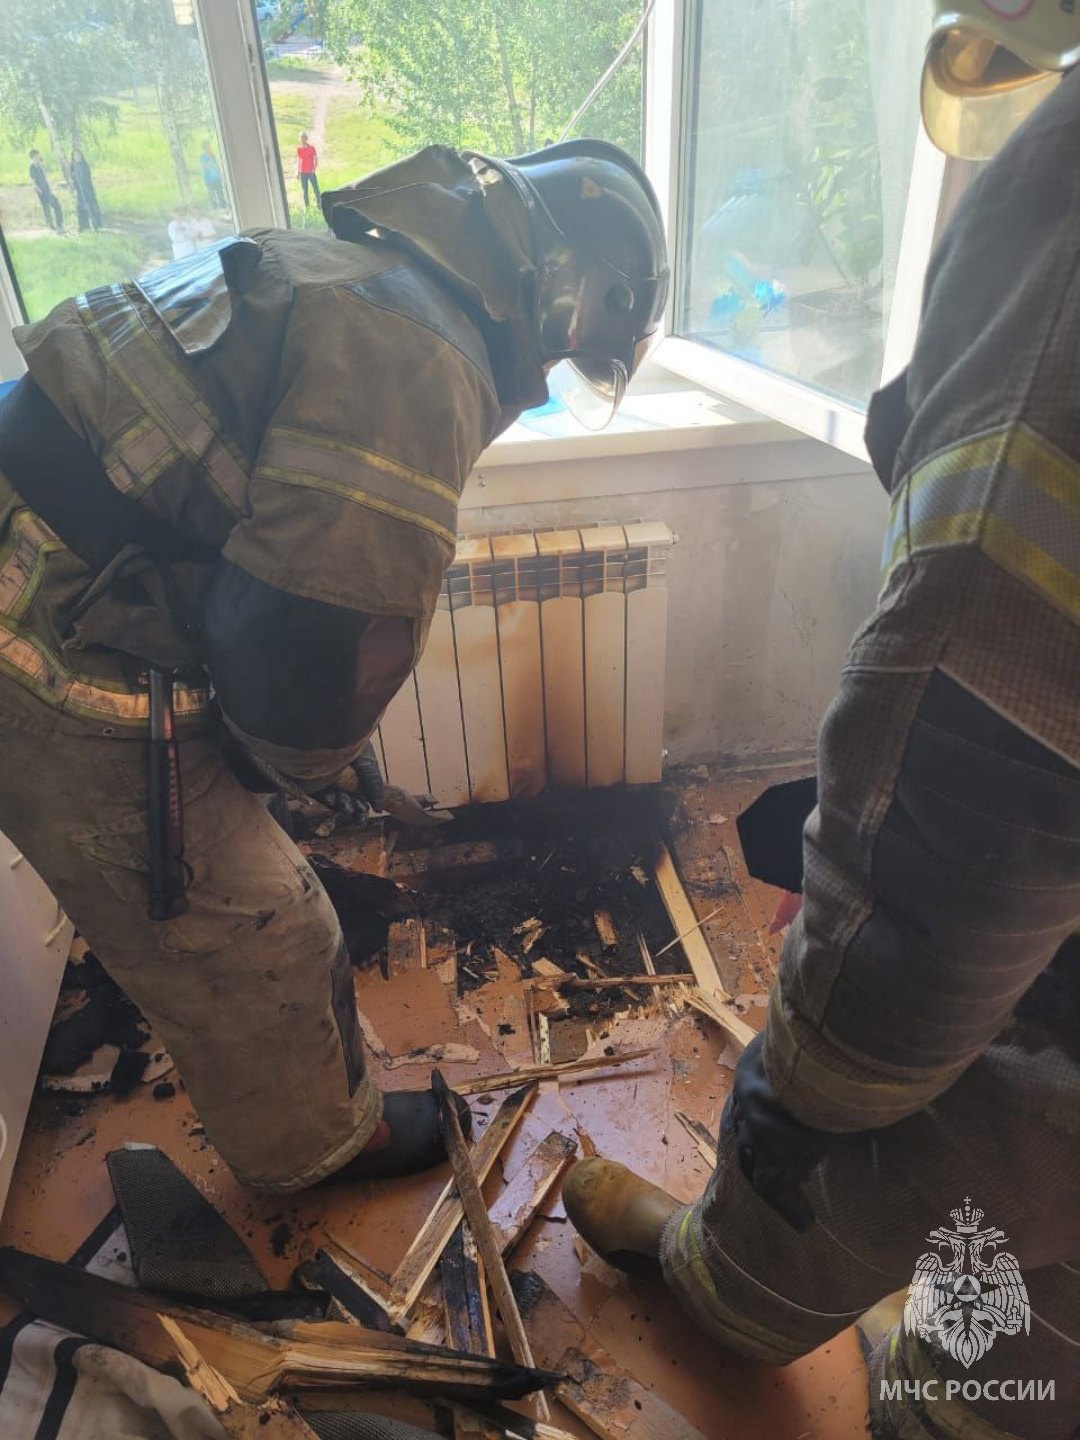 Пожарные устраняют последствия возгорания в квартире.